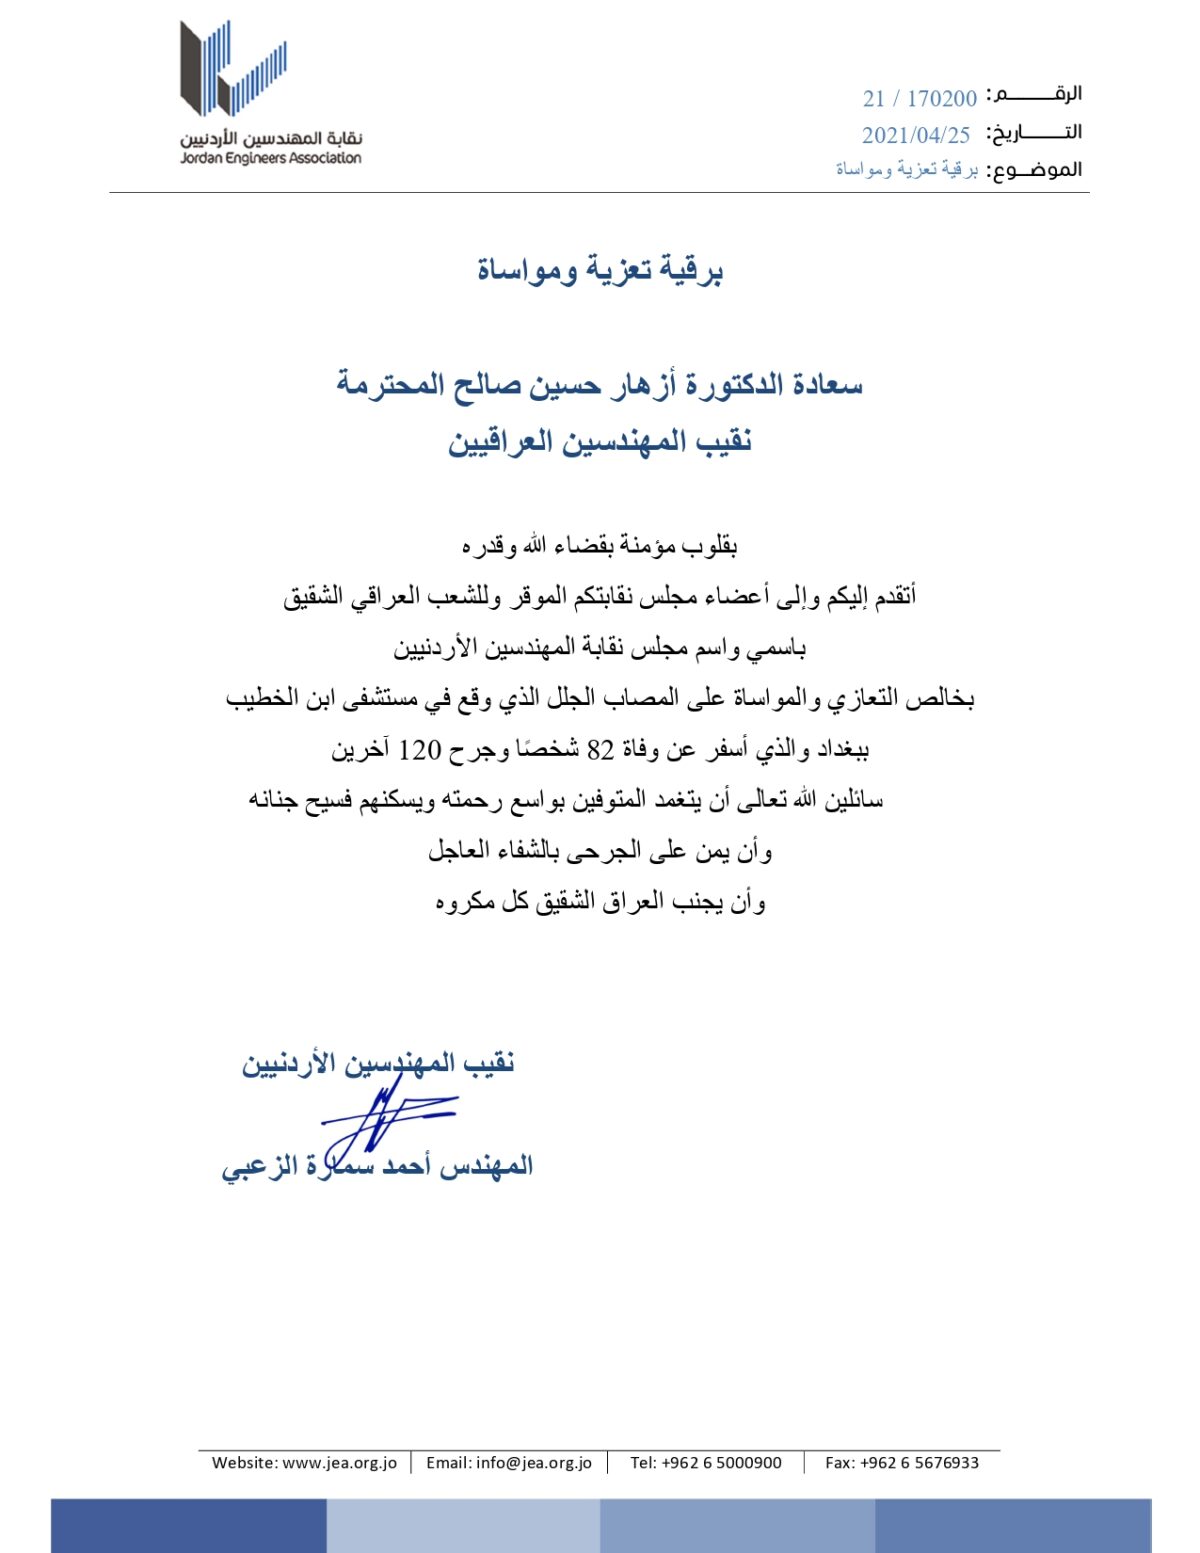 نقابة المهندسين الأردنيين تعزي نقابة المهندسين العراقية بحادثة مستشفى ابن الخطيب